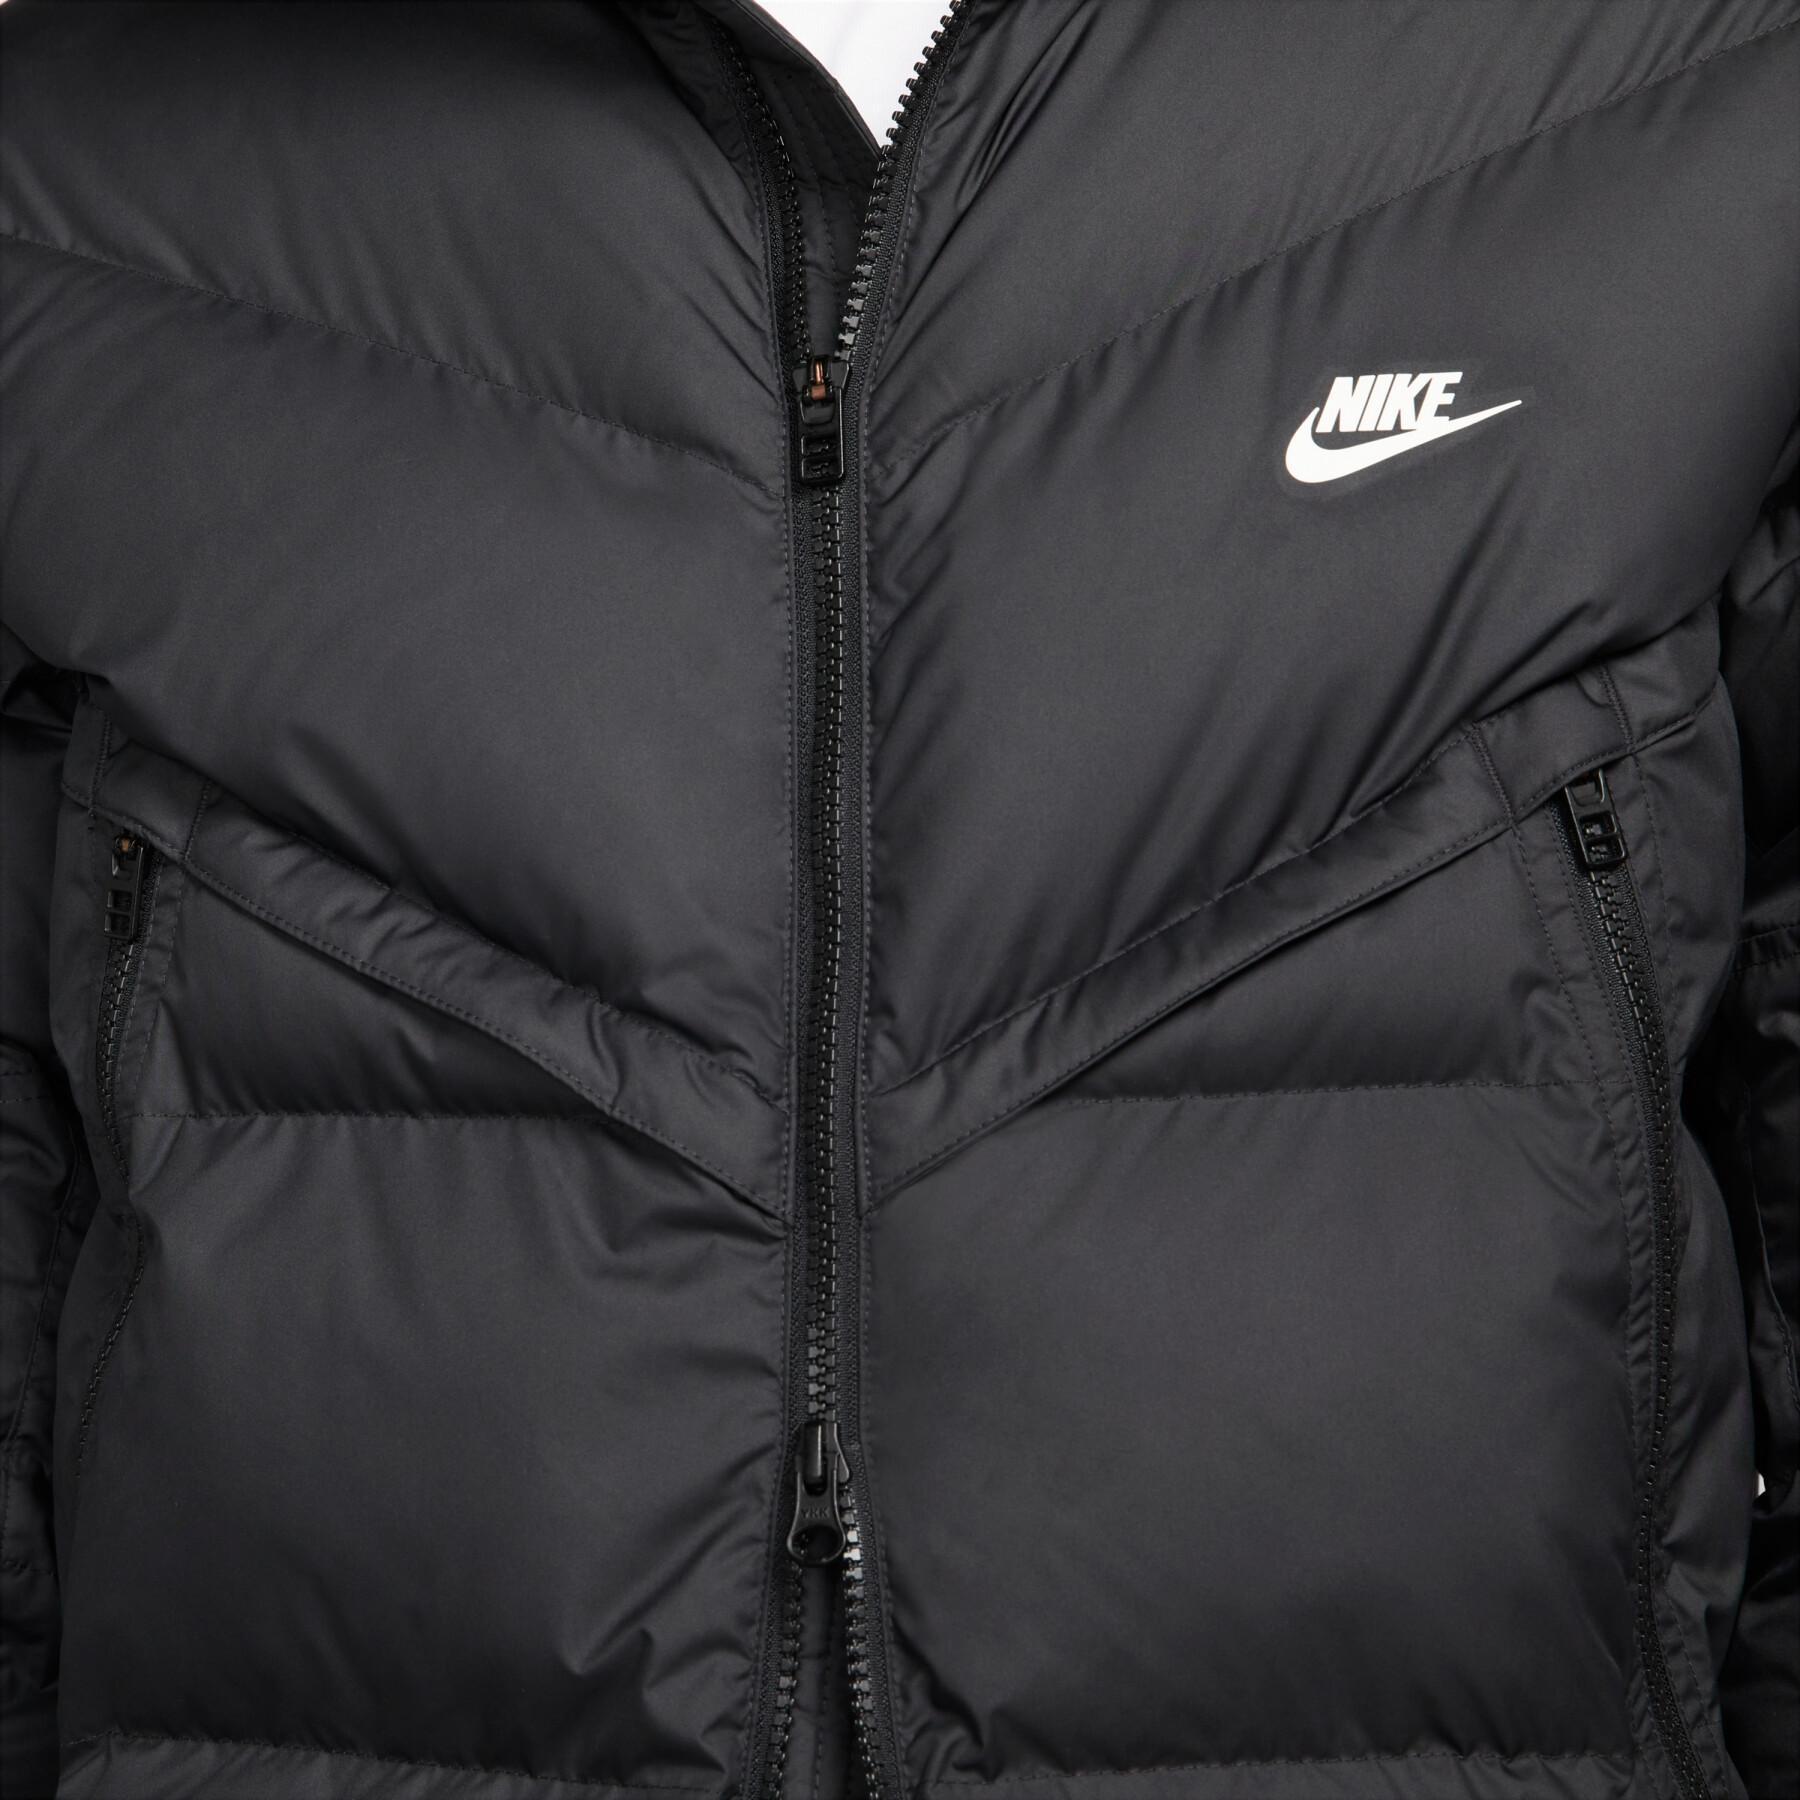 Puffer Jacket Nike Sportswear Storm-FIT Windrunner